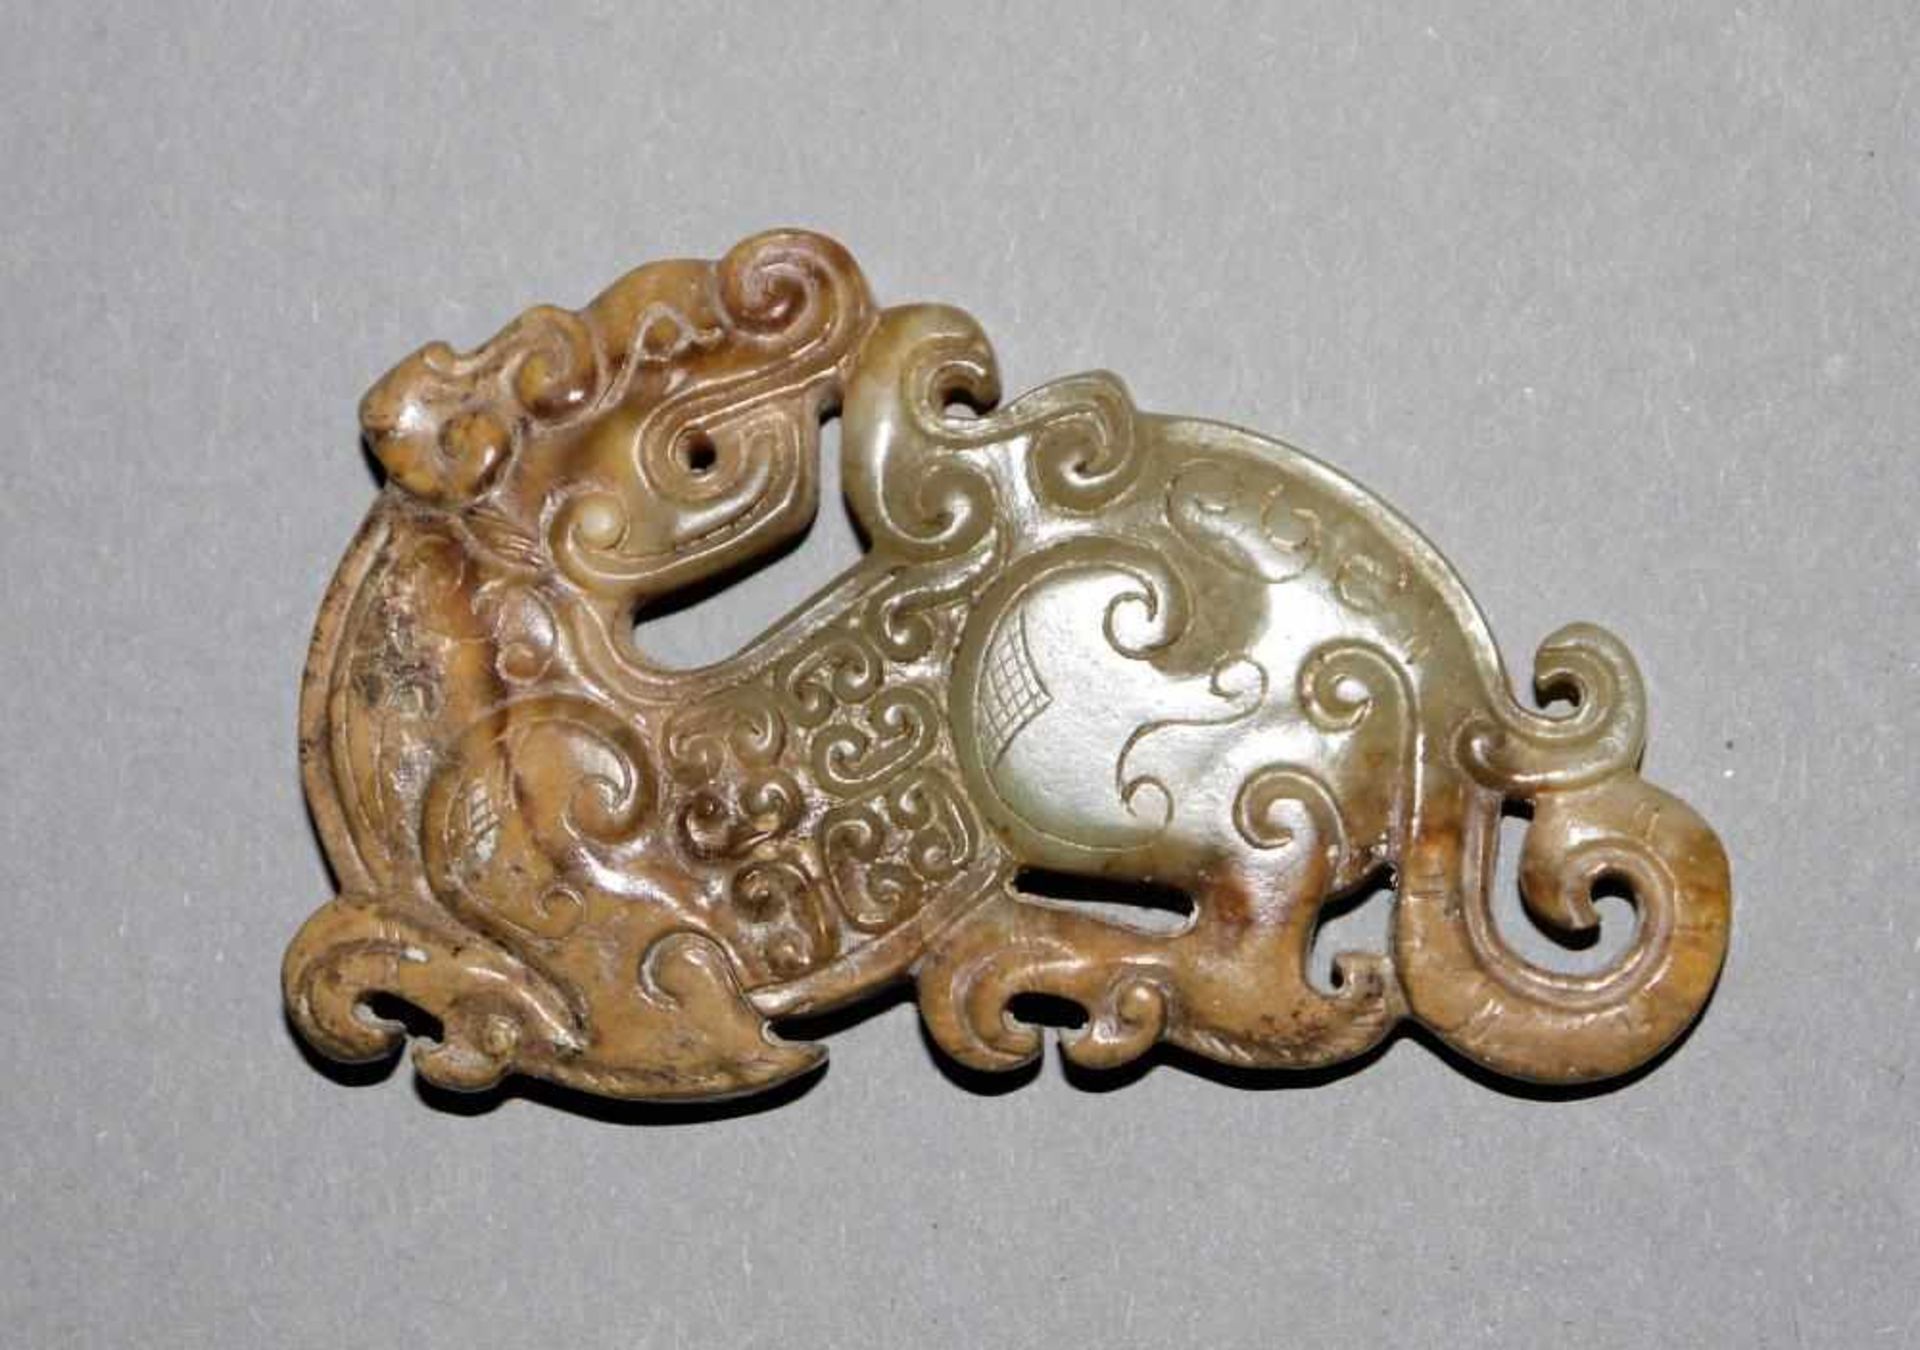 Feines Jade-Amulett eines Pixiu oder Drachen, Zeit der Östl. Zhou, China 5. - 3. Jh. v. Chr.